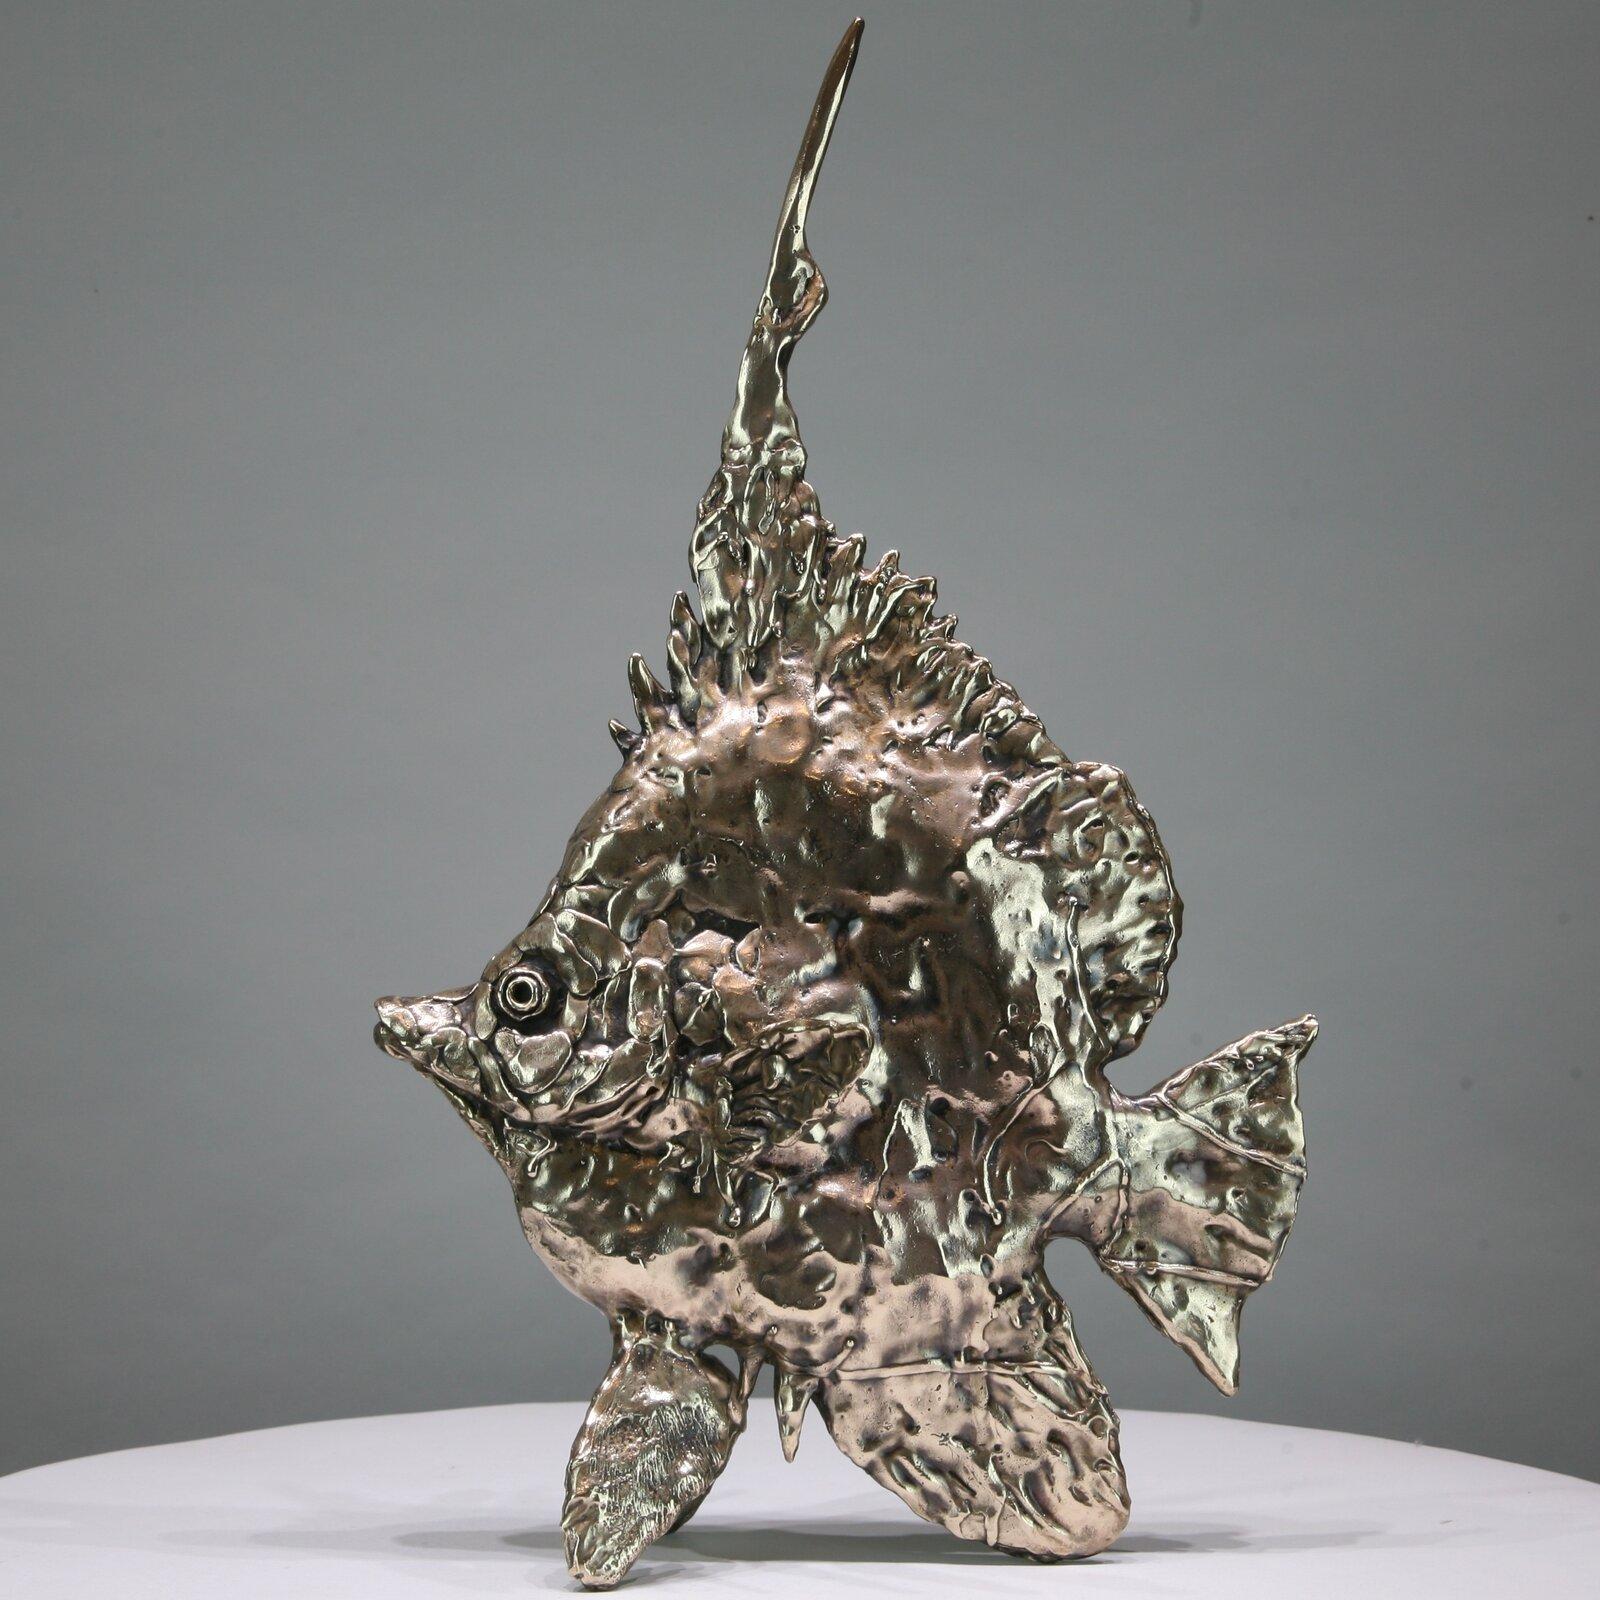 Meeresengel-Fisch-Original-Bronze-Skulptur in freier Wildbahn-Kunstwerk-Gegenwartskunst